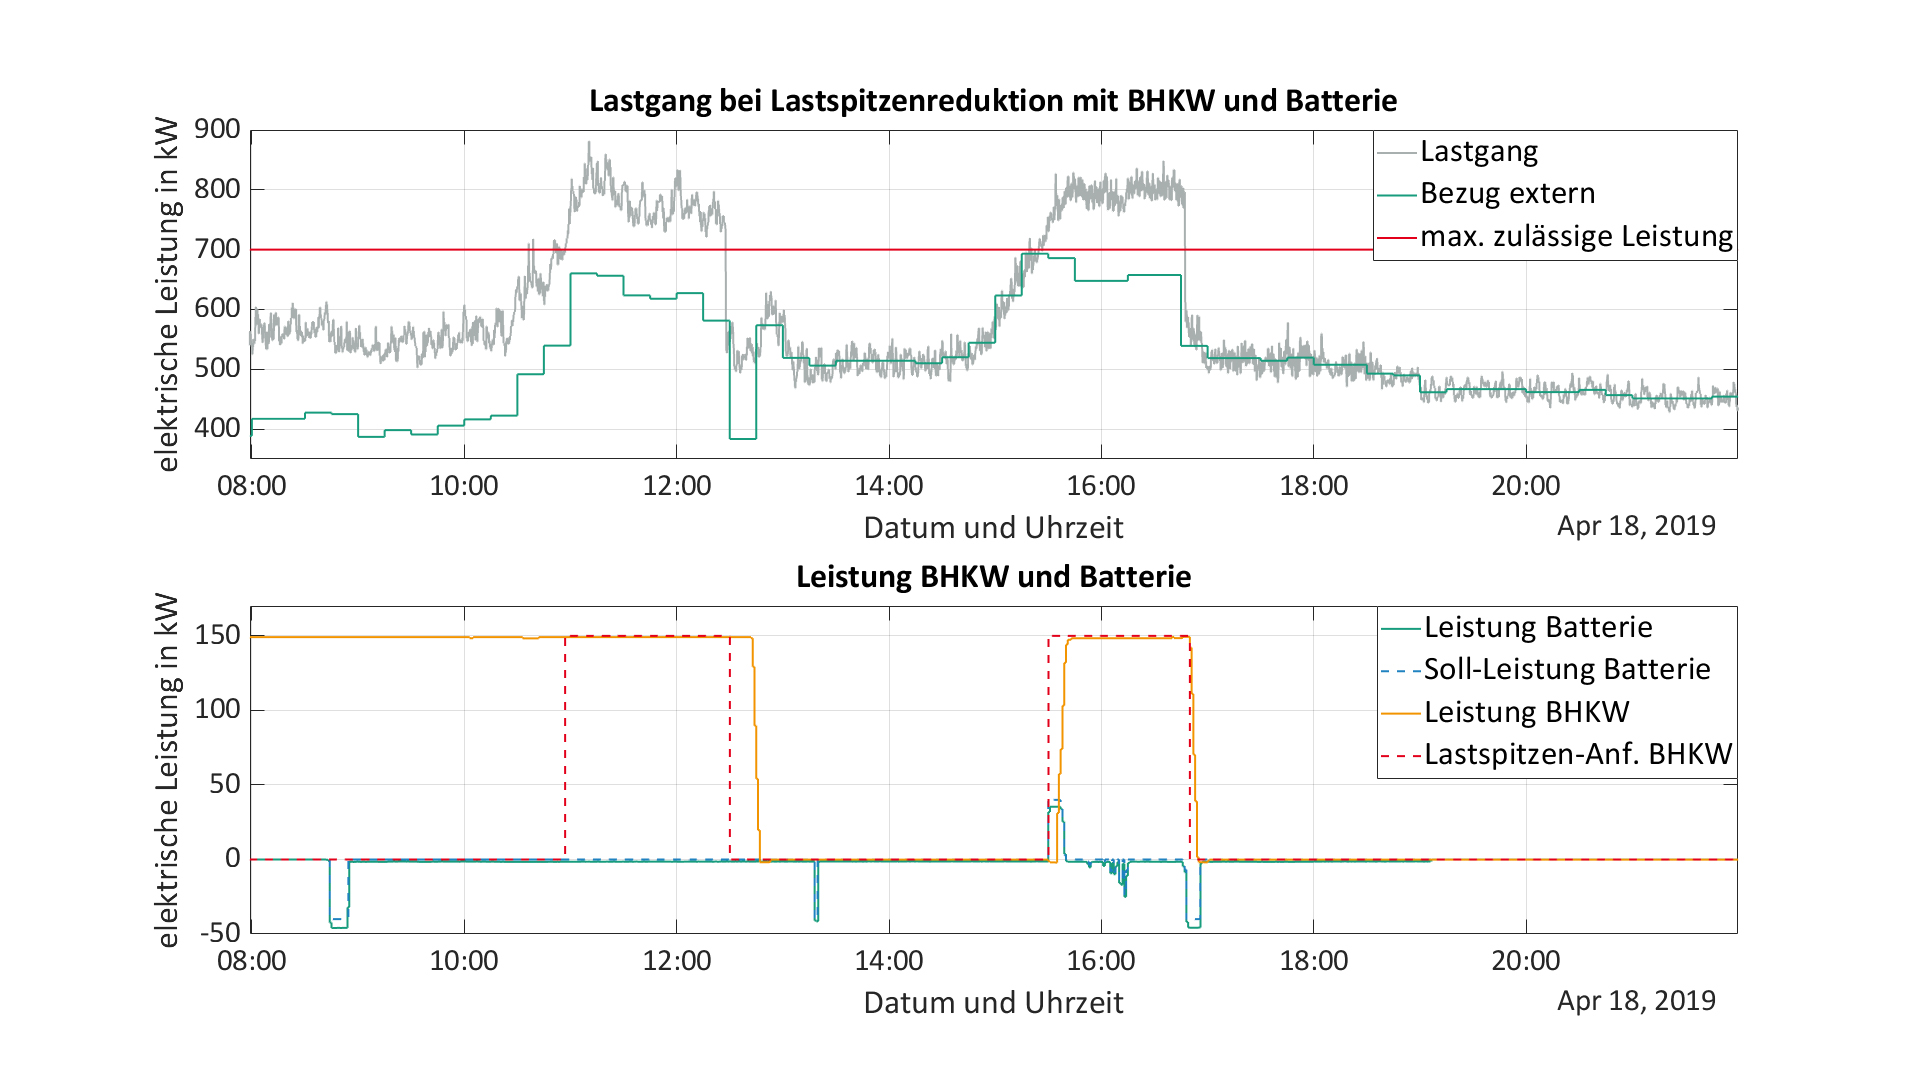   Messreihe einer am Fraunhofer IISB durchgeführten Lastspitzenreduktion: Bei einer Vorgabe von einer maximal zulässigen Bezugsleistung von 700 kW konnten die Lastspitzen von 870 KW um ca. 20% auf 695 kW reduziert werden.